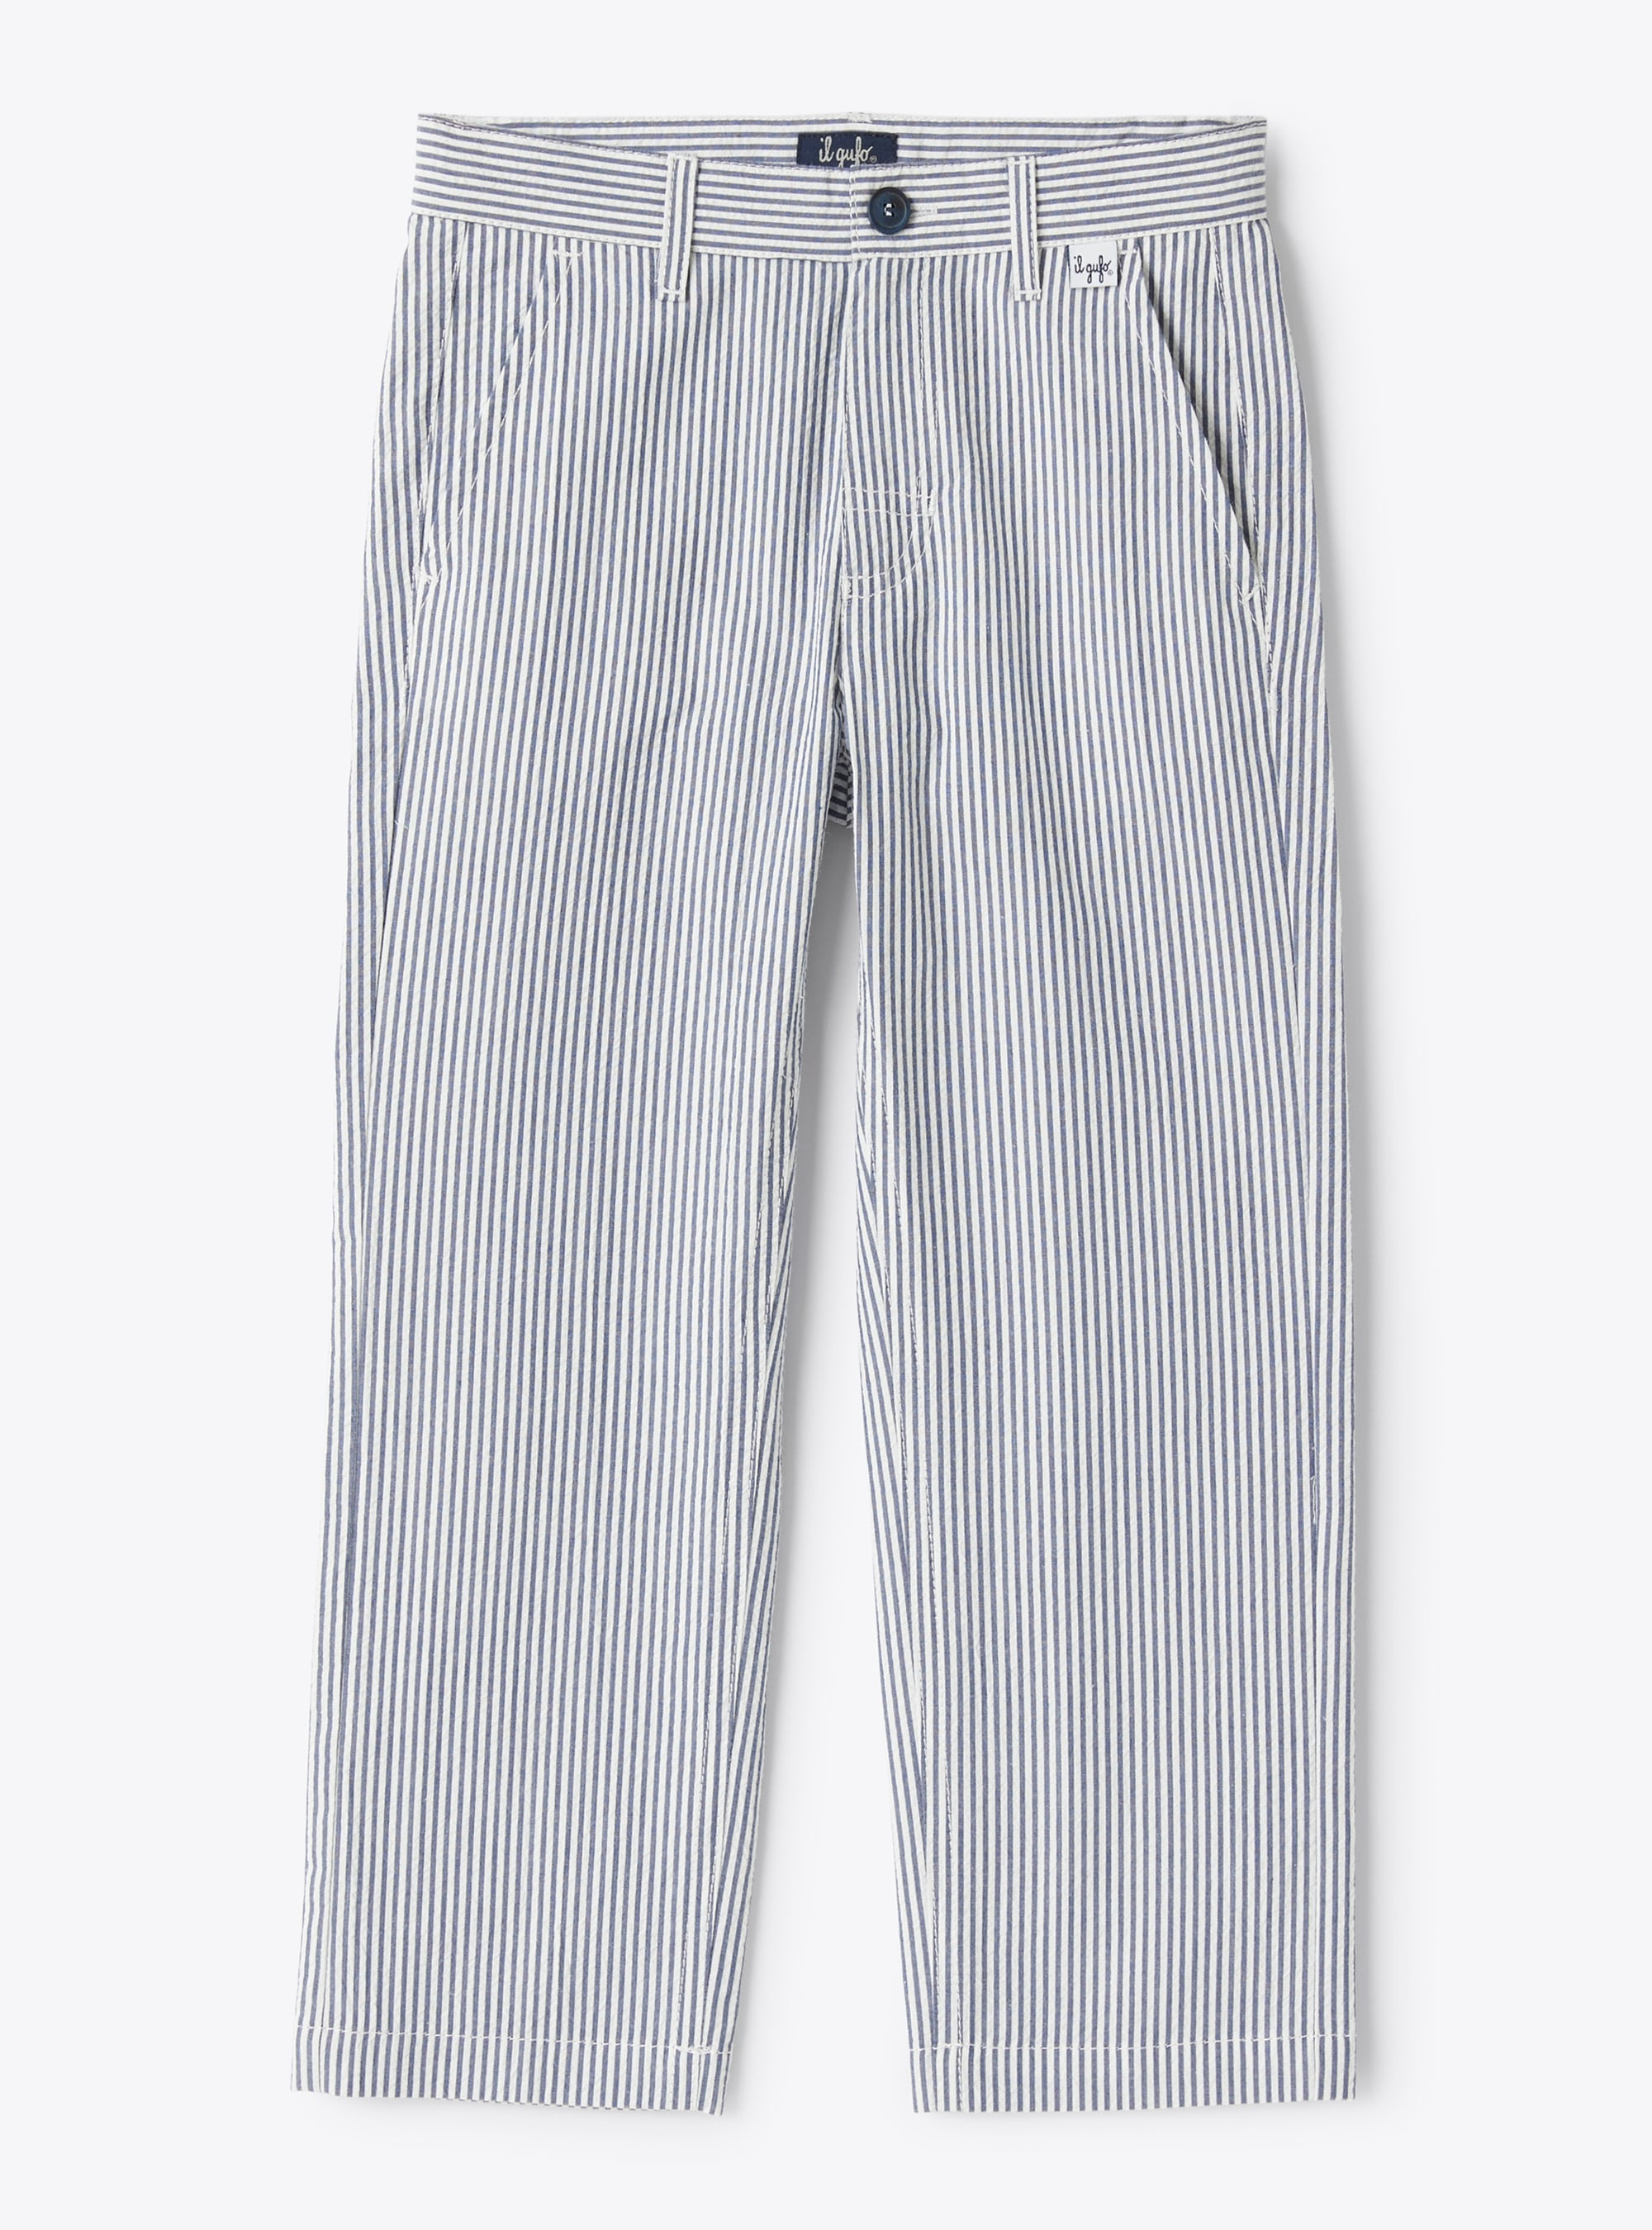 Pantalone lungo in seersucker a righe blu e bianche - Pantaloni - Il Gufo